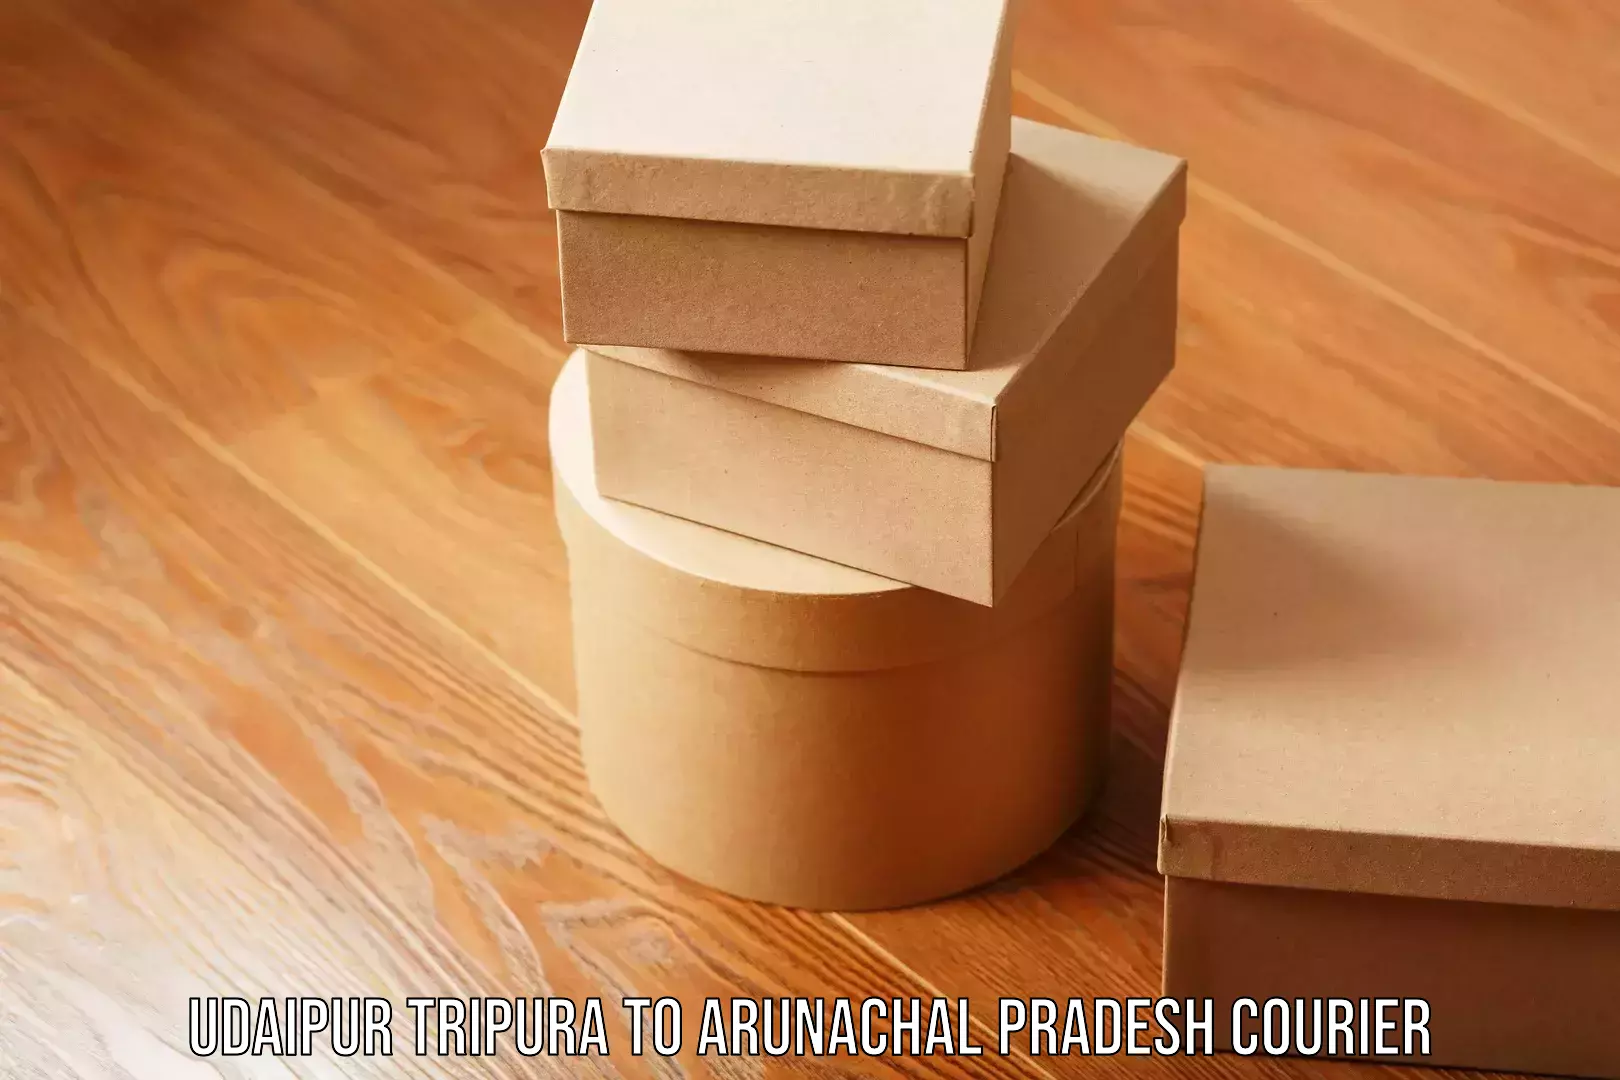 Nationwide parcel services Udaipur Tripura to Arunachal Pradesh